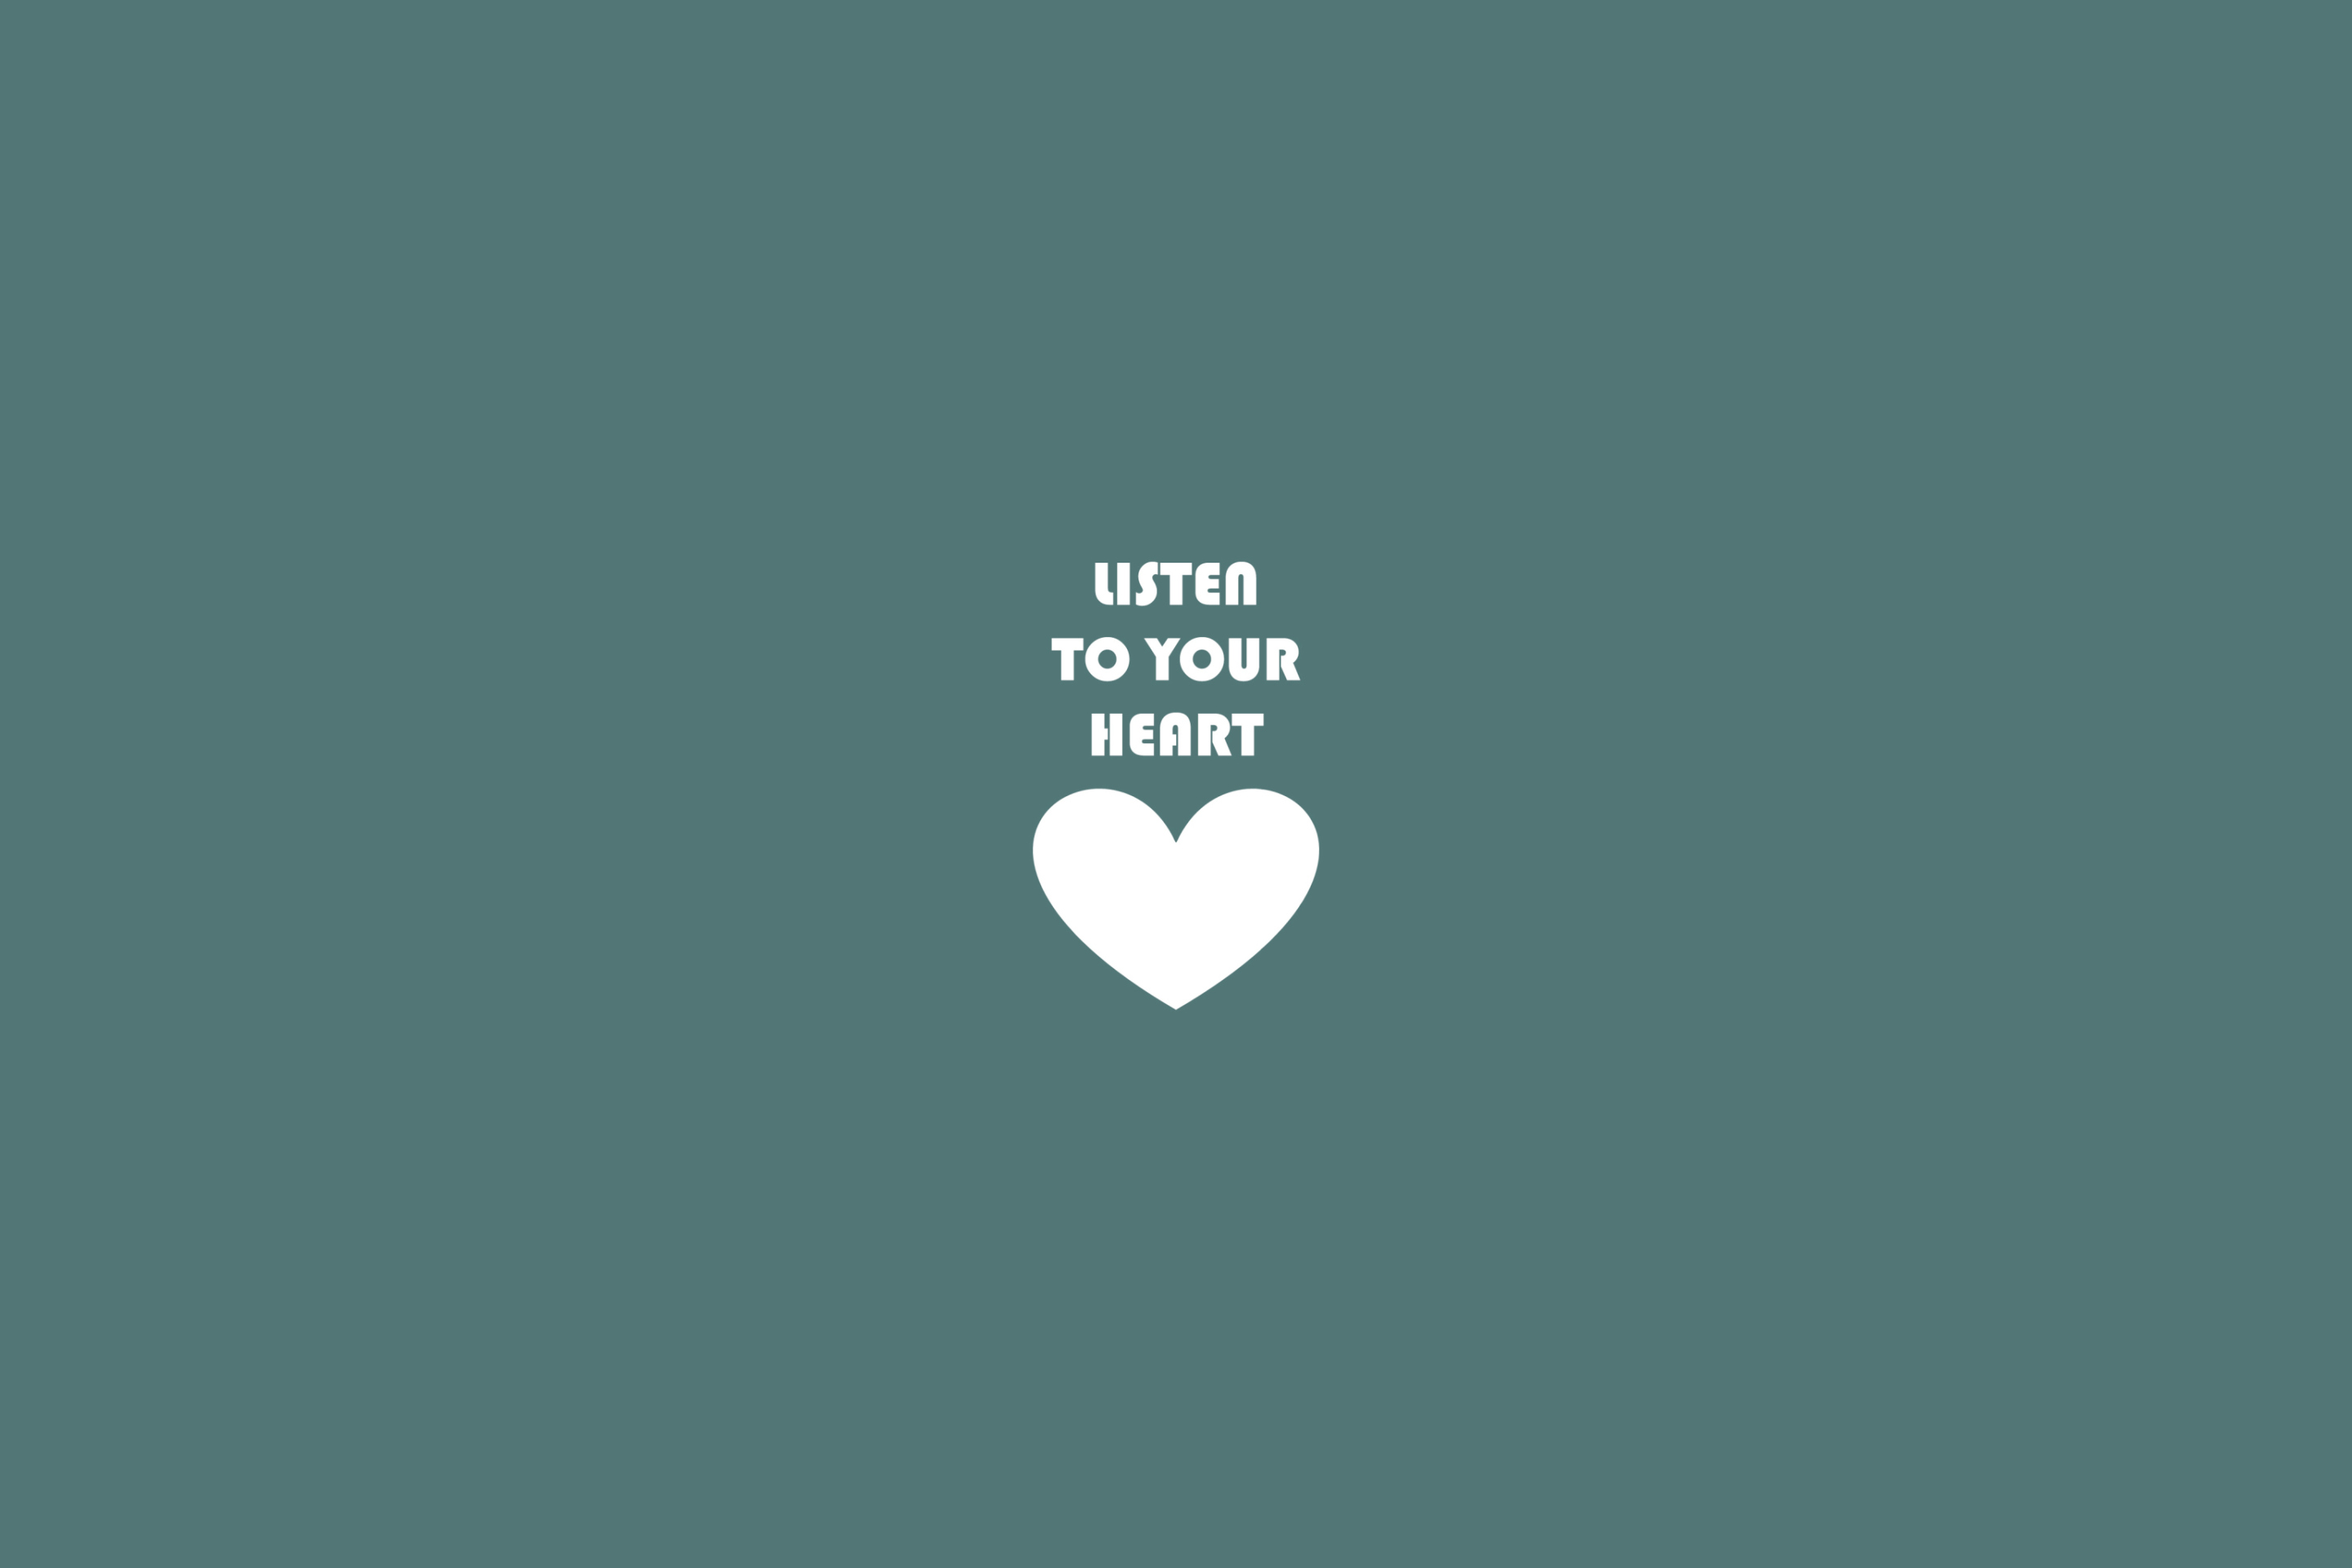 Das Listen To Your Heart Wallpaper 2880x1920